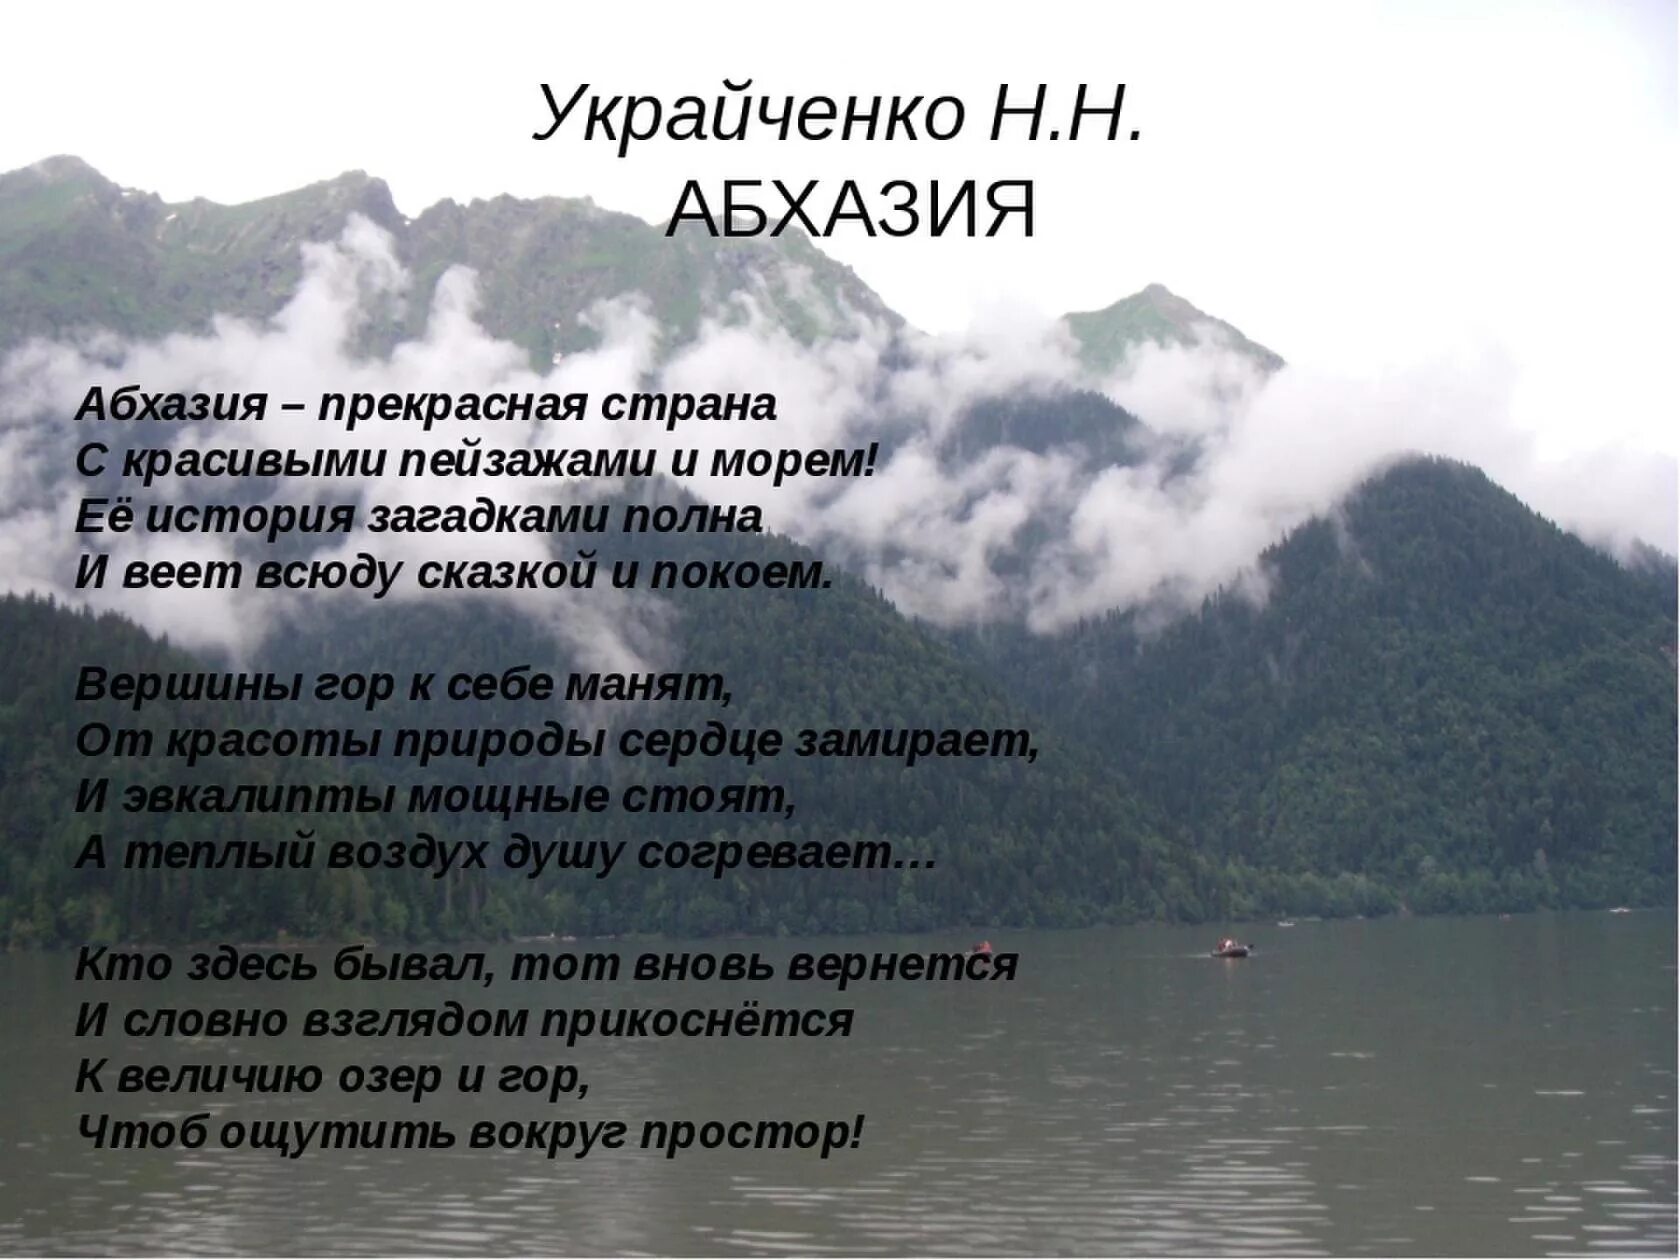 Песня страна души. Стихи про Абхазию. Цитаты про Абхазию. Высказывания про Абхазию красивые. Высказывания об Абхазии.